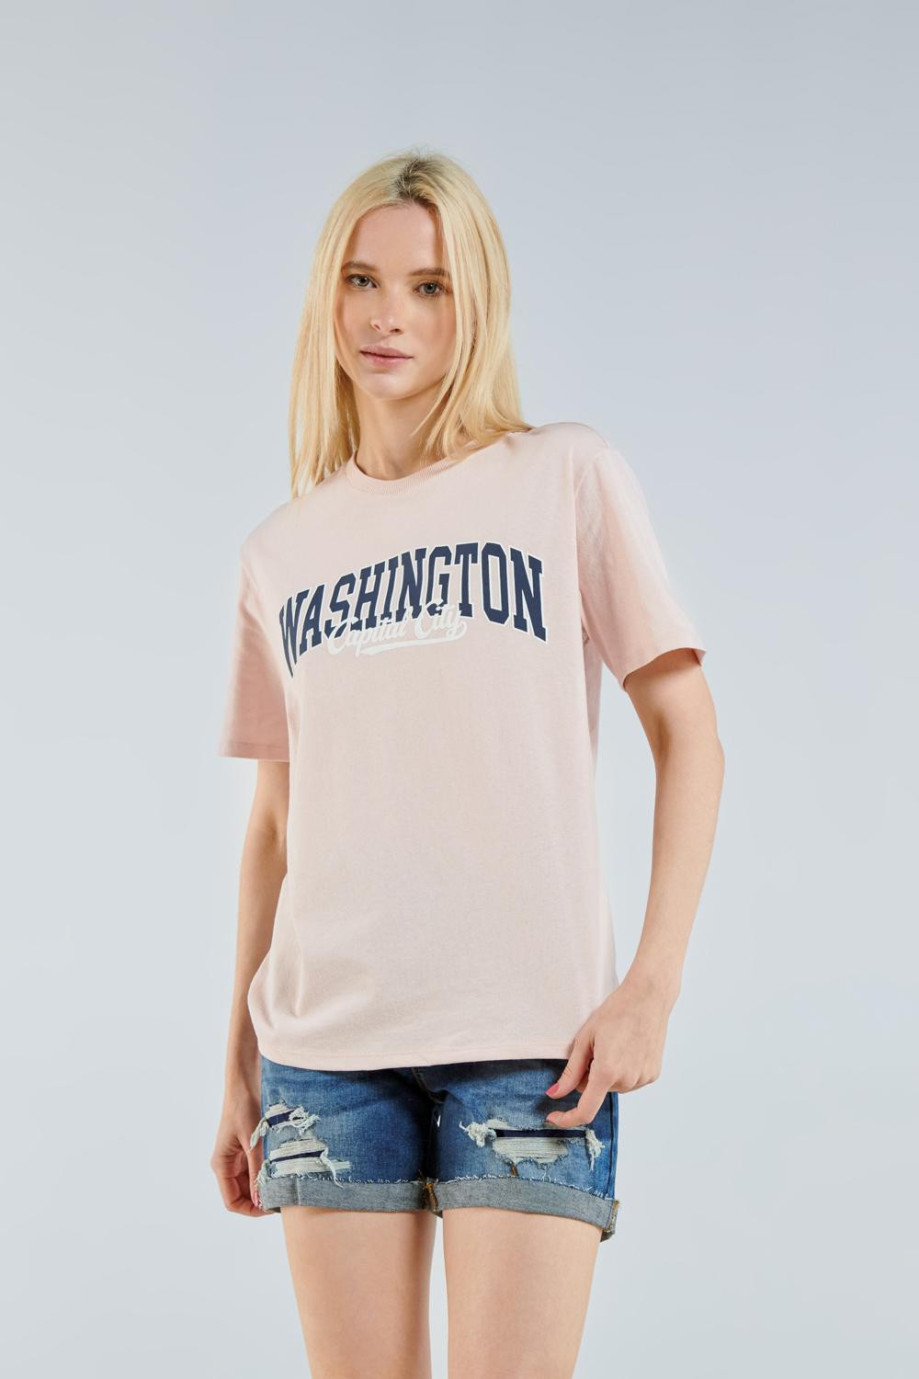 Camiseta oversize rosada clara con cuello redondo y diseño college de Washington